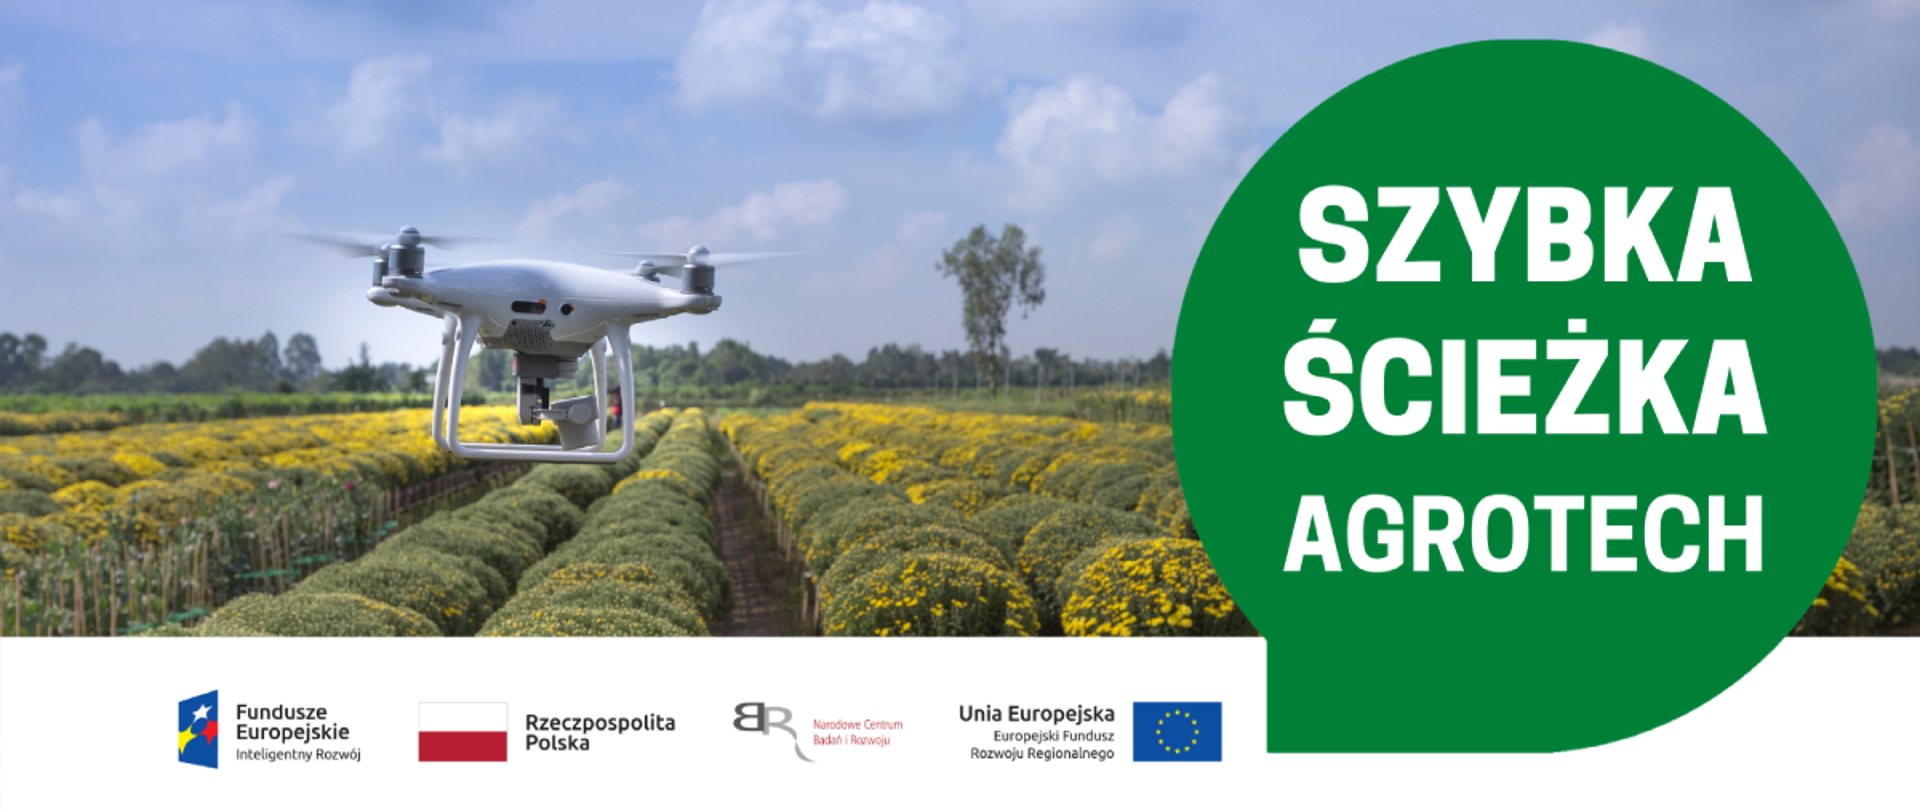 Po lewej stronie dron lecący nad polem uprawnym, po prawej w zielonym dymku napis "Szybka Ścieżka Agrotech"